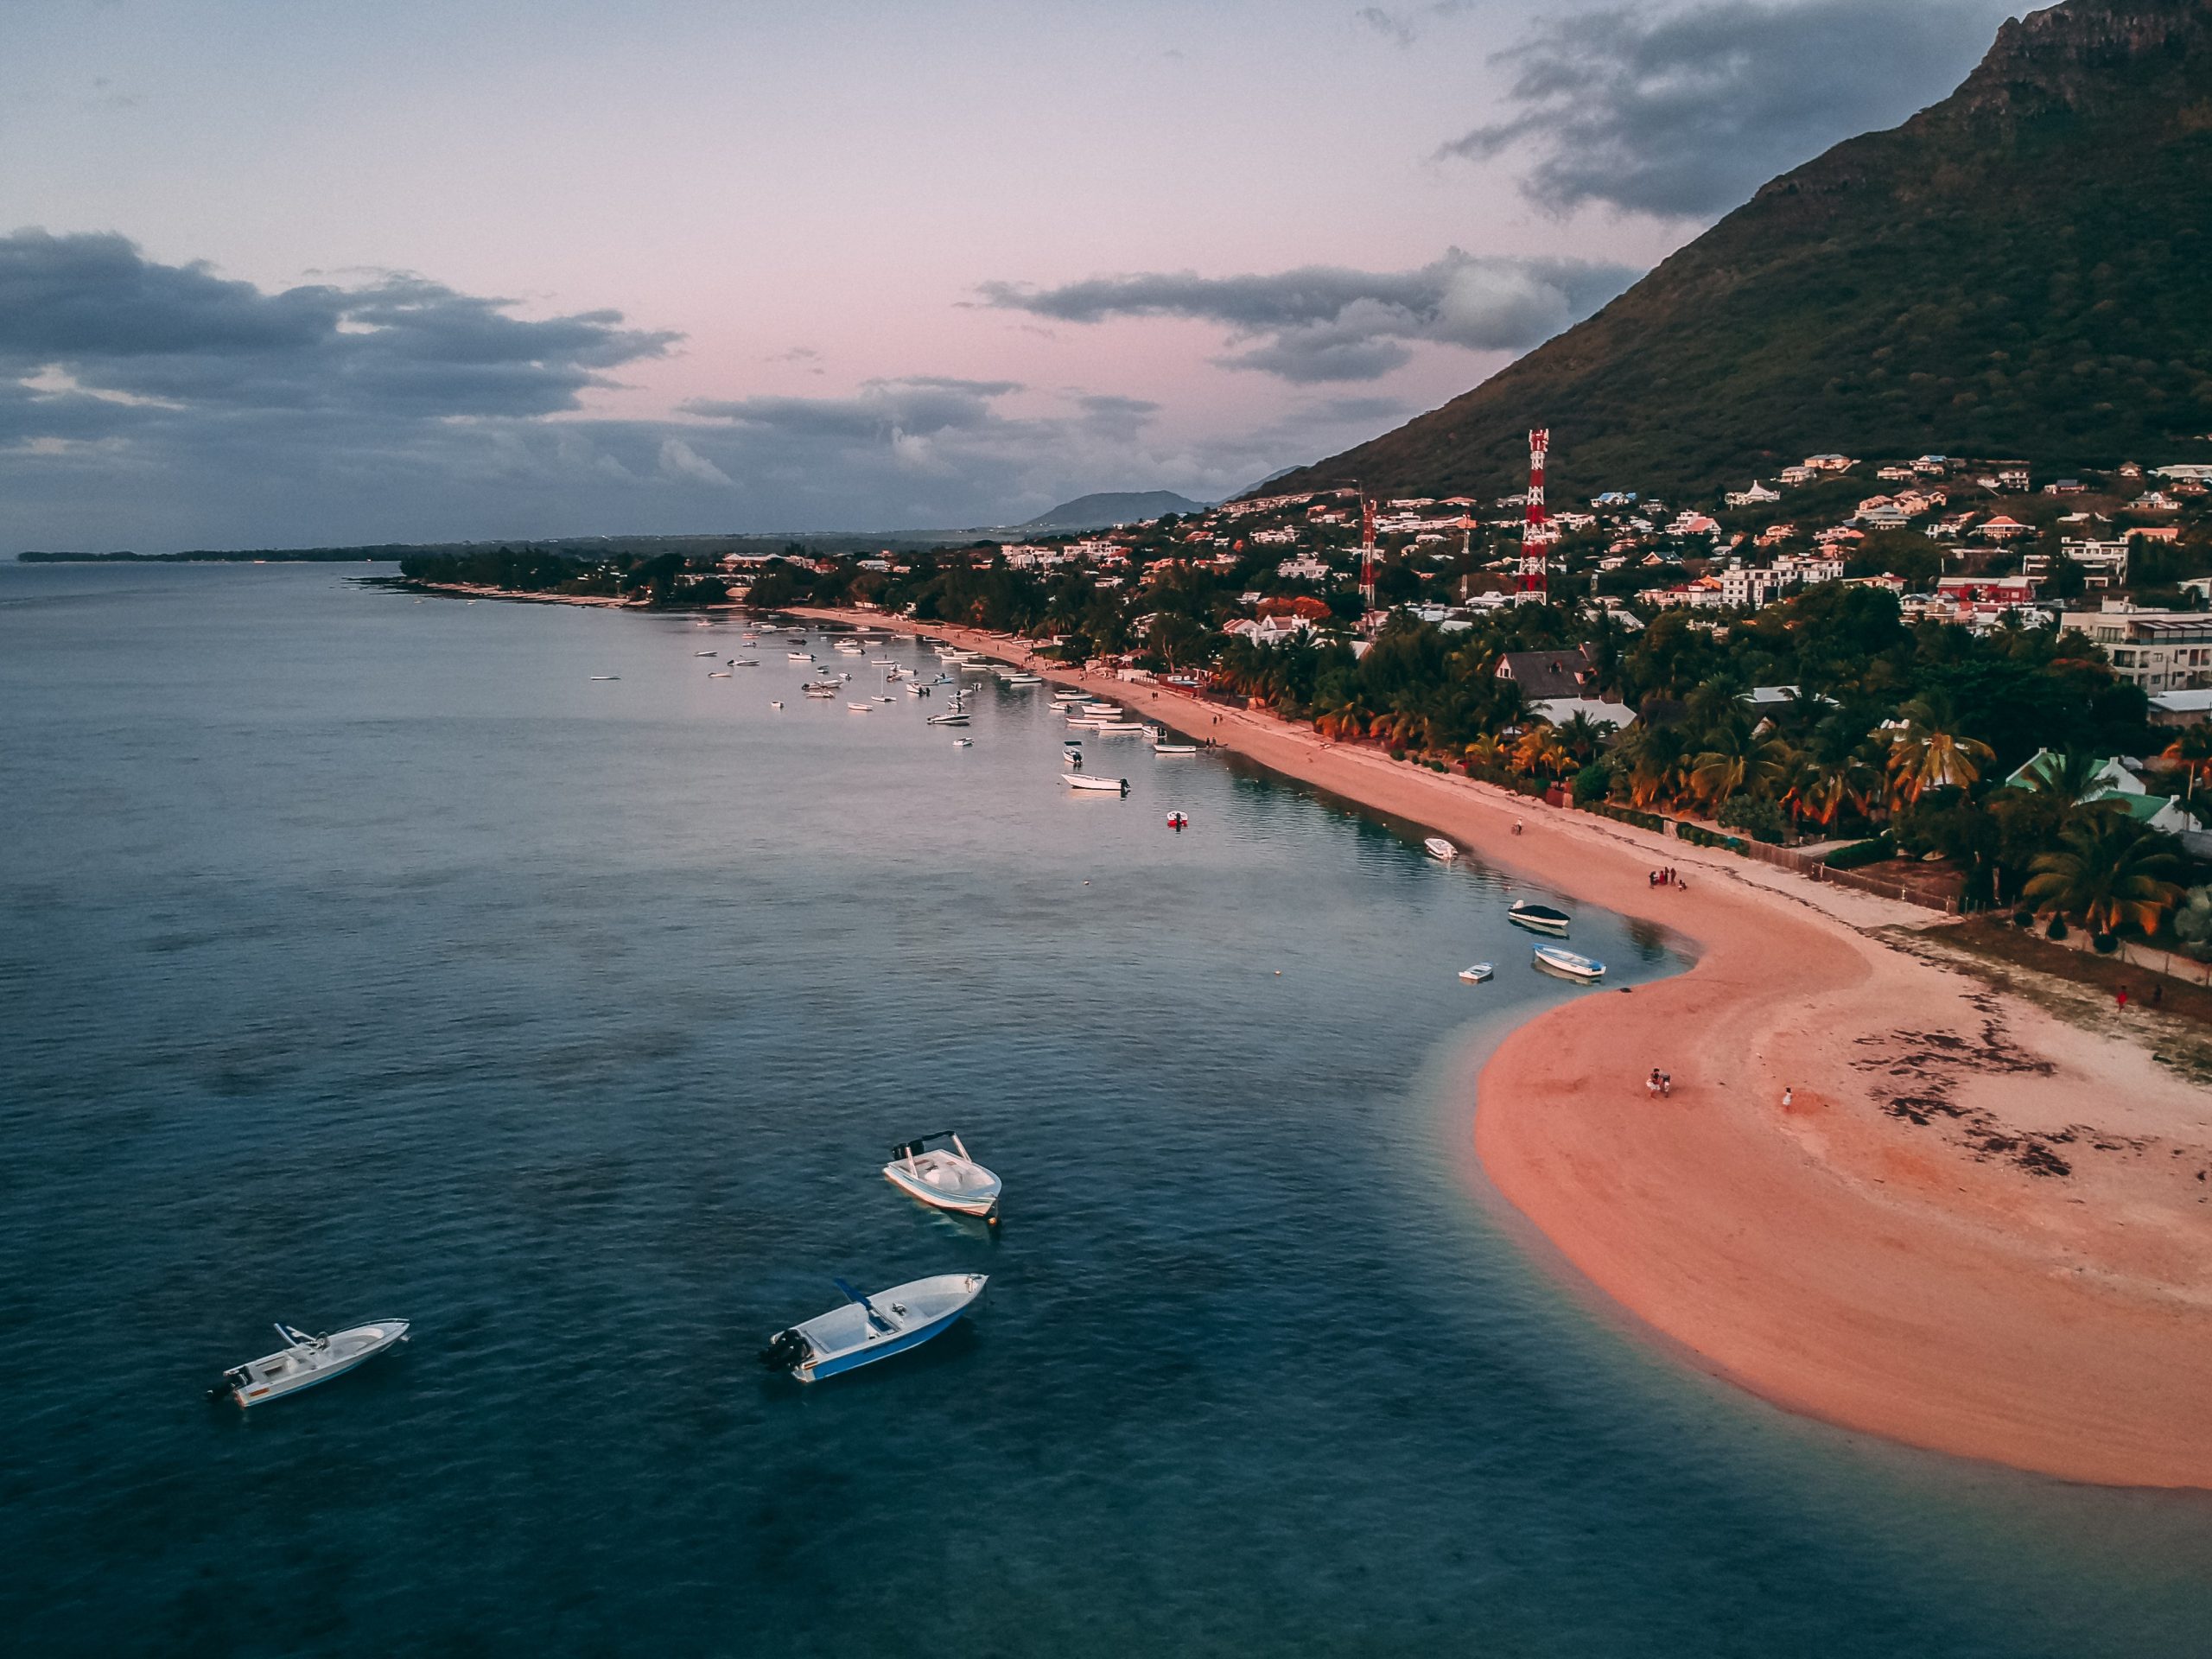 Thiên nhiên đã hào phóng ban tặng Mauritius những bãi biển đẹp tựa thiên đường